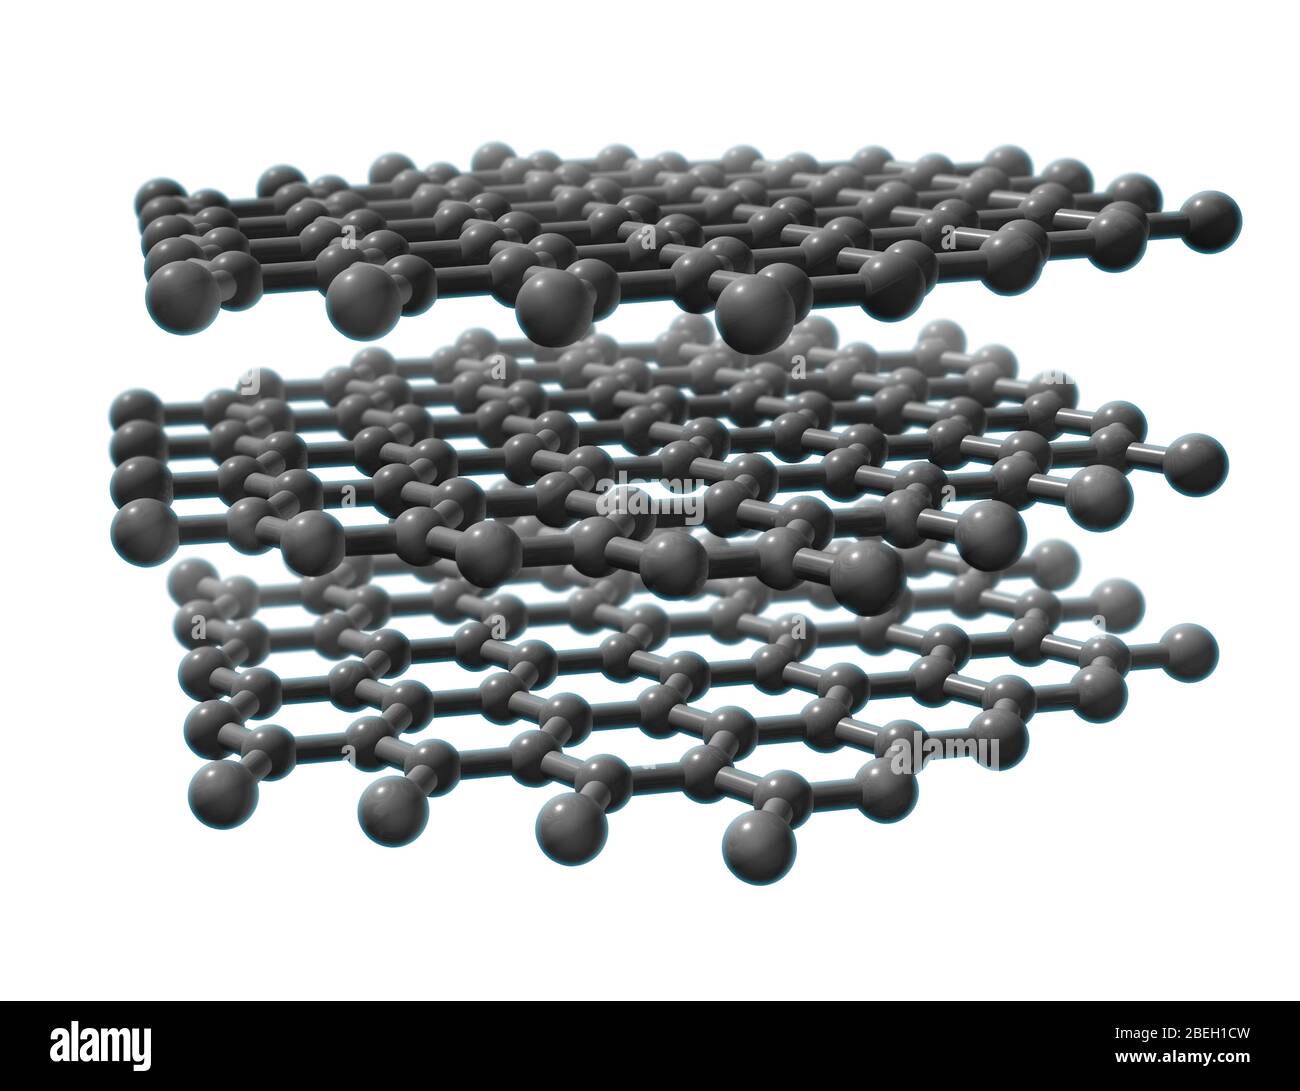 Un modello molecolare di grafite, un minerale composto da strati impilati  di atomi di carbonio disposti in un reticolo a nido d'ape. La grafite è  considerata la forma più stabile di carbonio